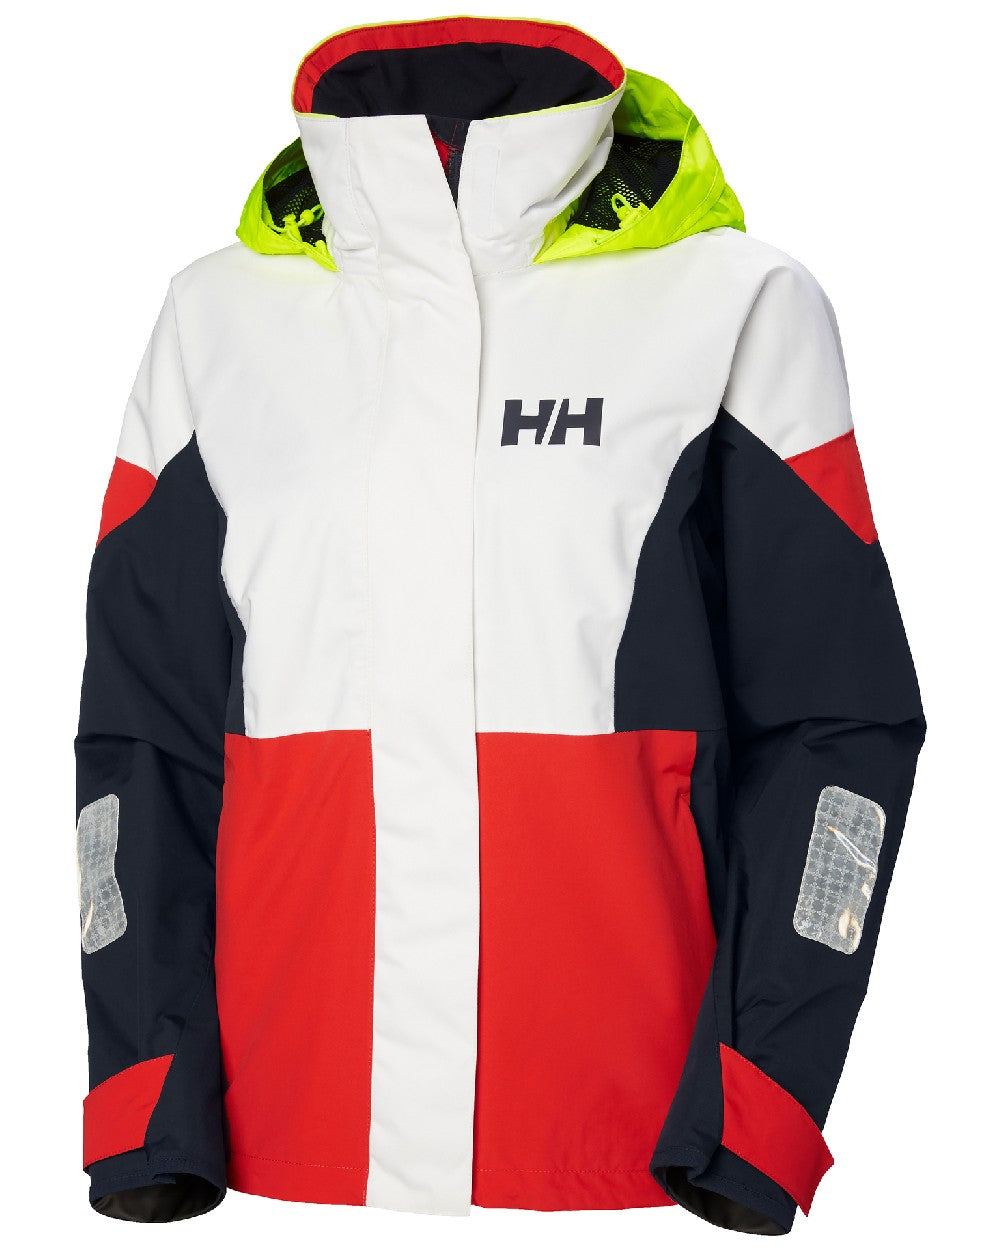 Alert Red coloured Helly Hansen Womens Newport Regatta Sailing Jacket on white background 